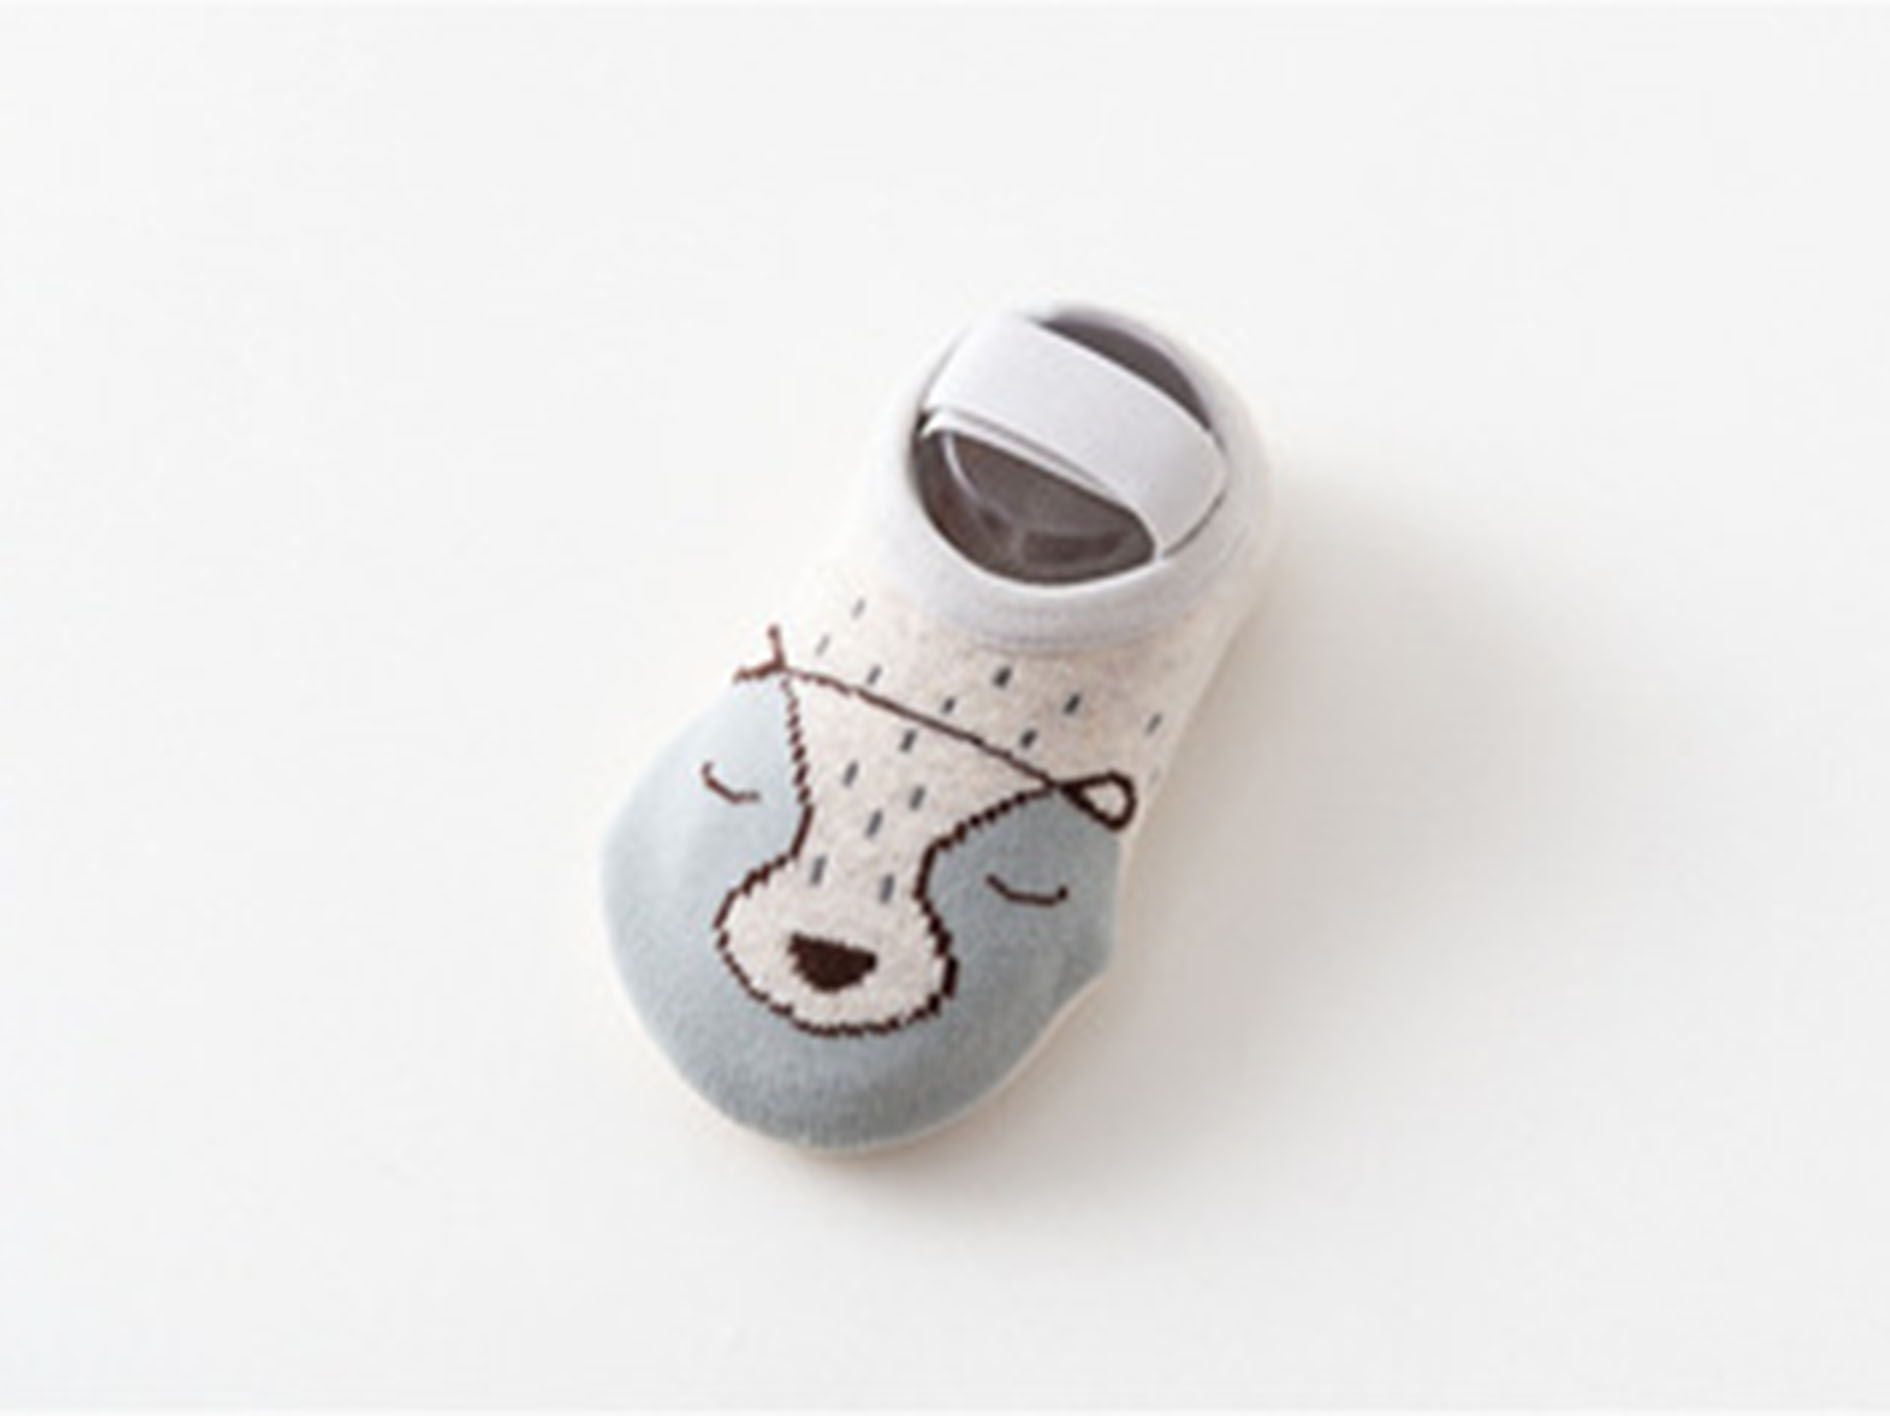 ถุงเท้าเด็กหัดเดิน ถุงเท้าเด็กอ่อน ถุงเท้าเด็กแรกเกิด ถุงเท้าเด็กทารก ลายการ์ตูนน่ารัก มีกันลื่น สำหรับเด็กอายุ 0-12 เดือน